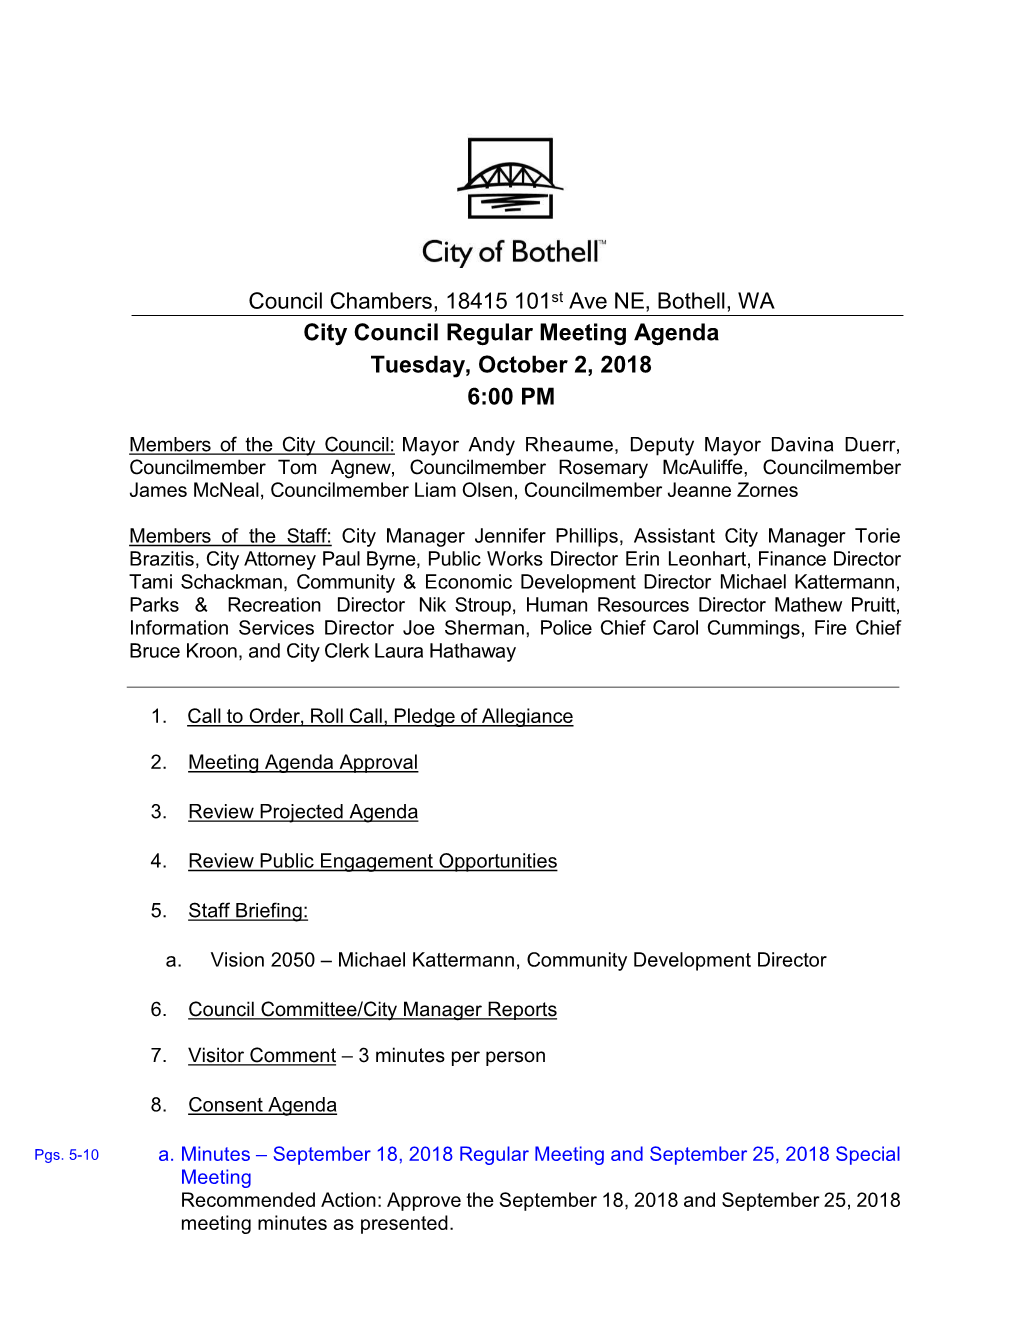 City Council Regular Meeting Agenda Tuesday, October 2, 2018 6:00 PM